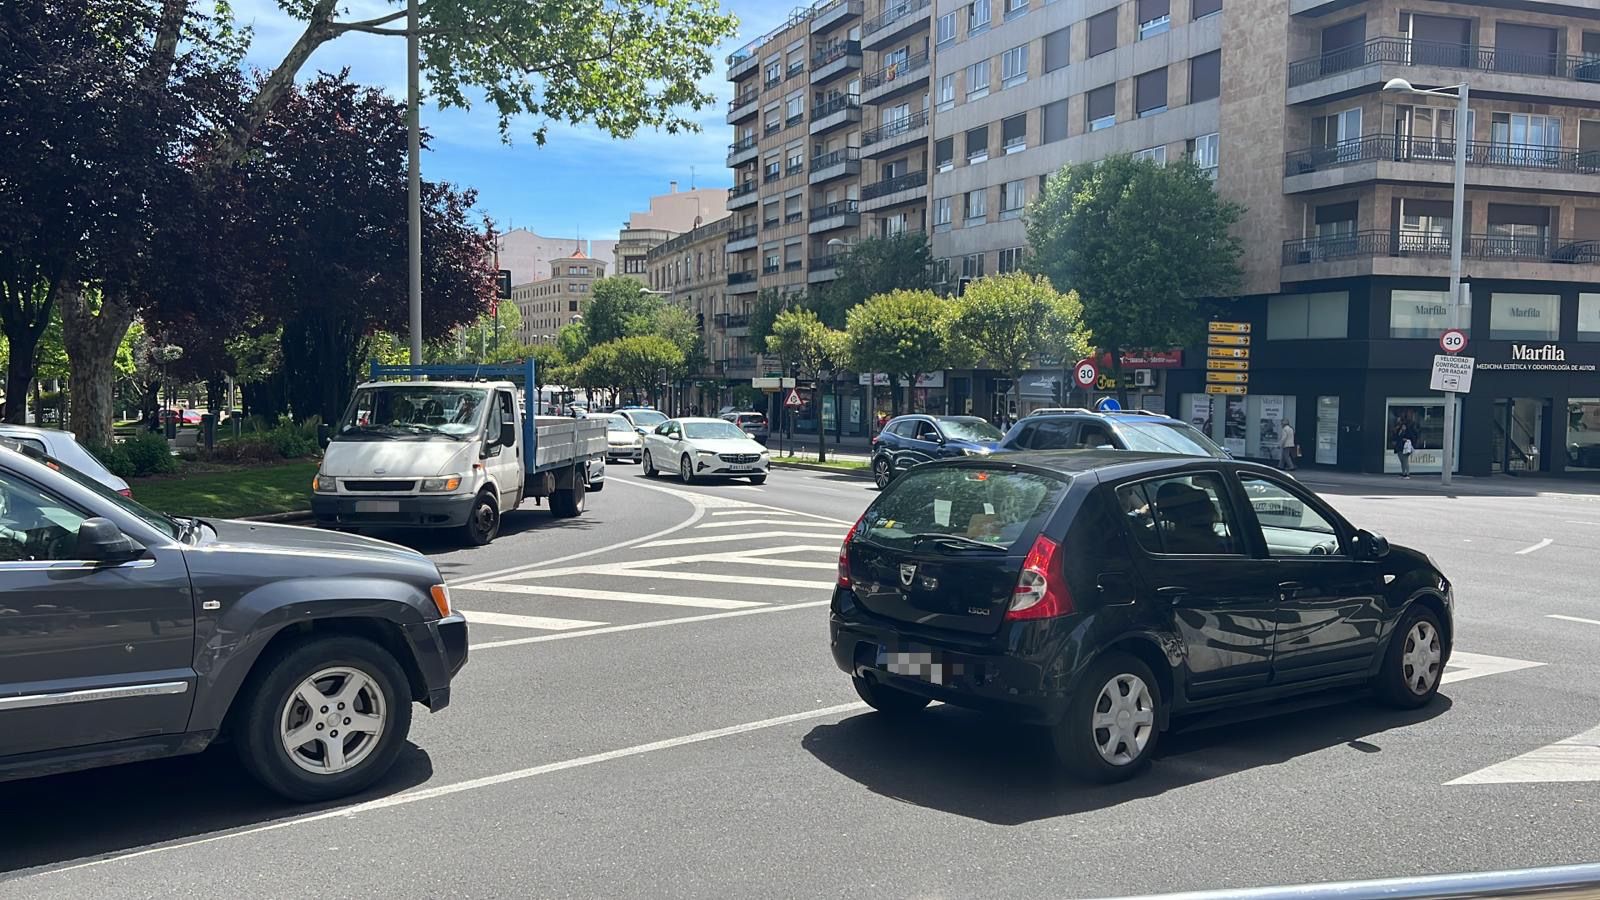 Apagón de los semáforos en la zona de plaza de España